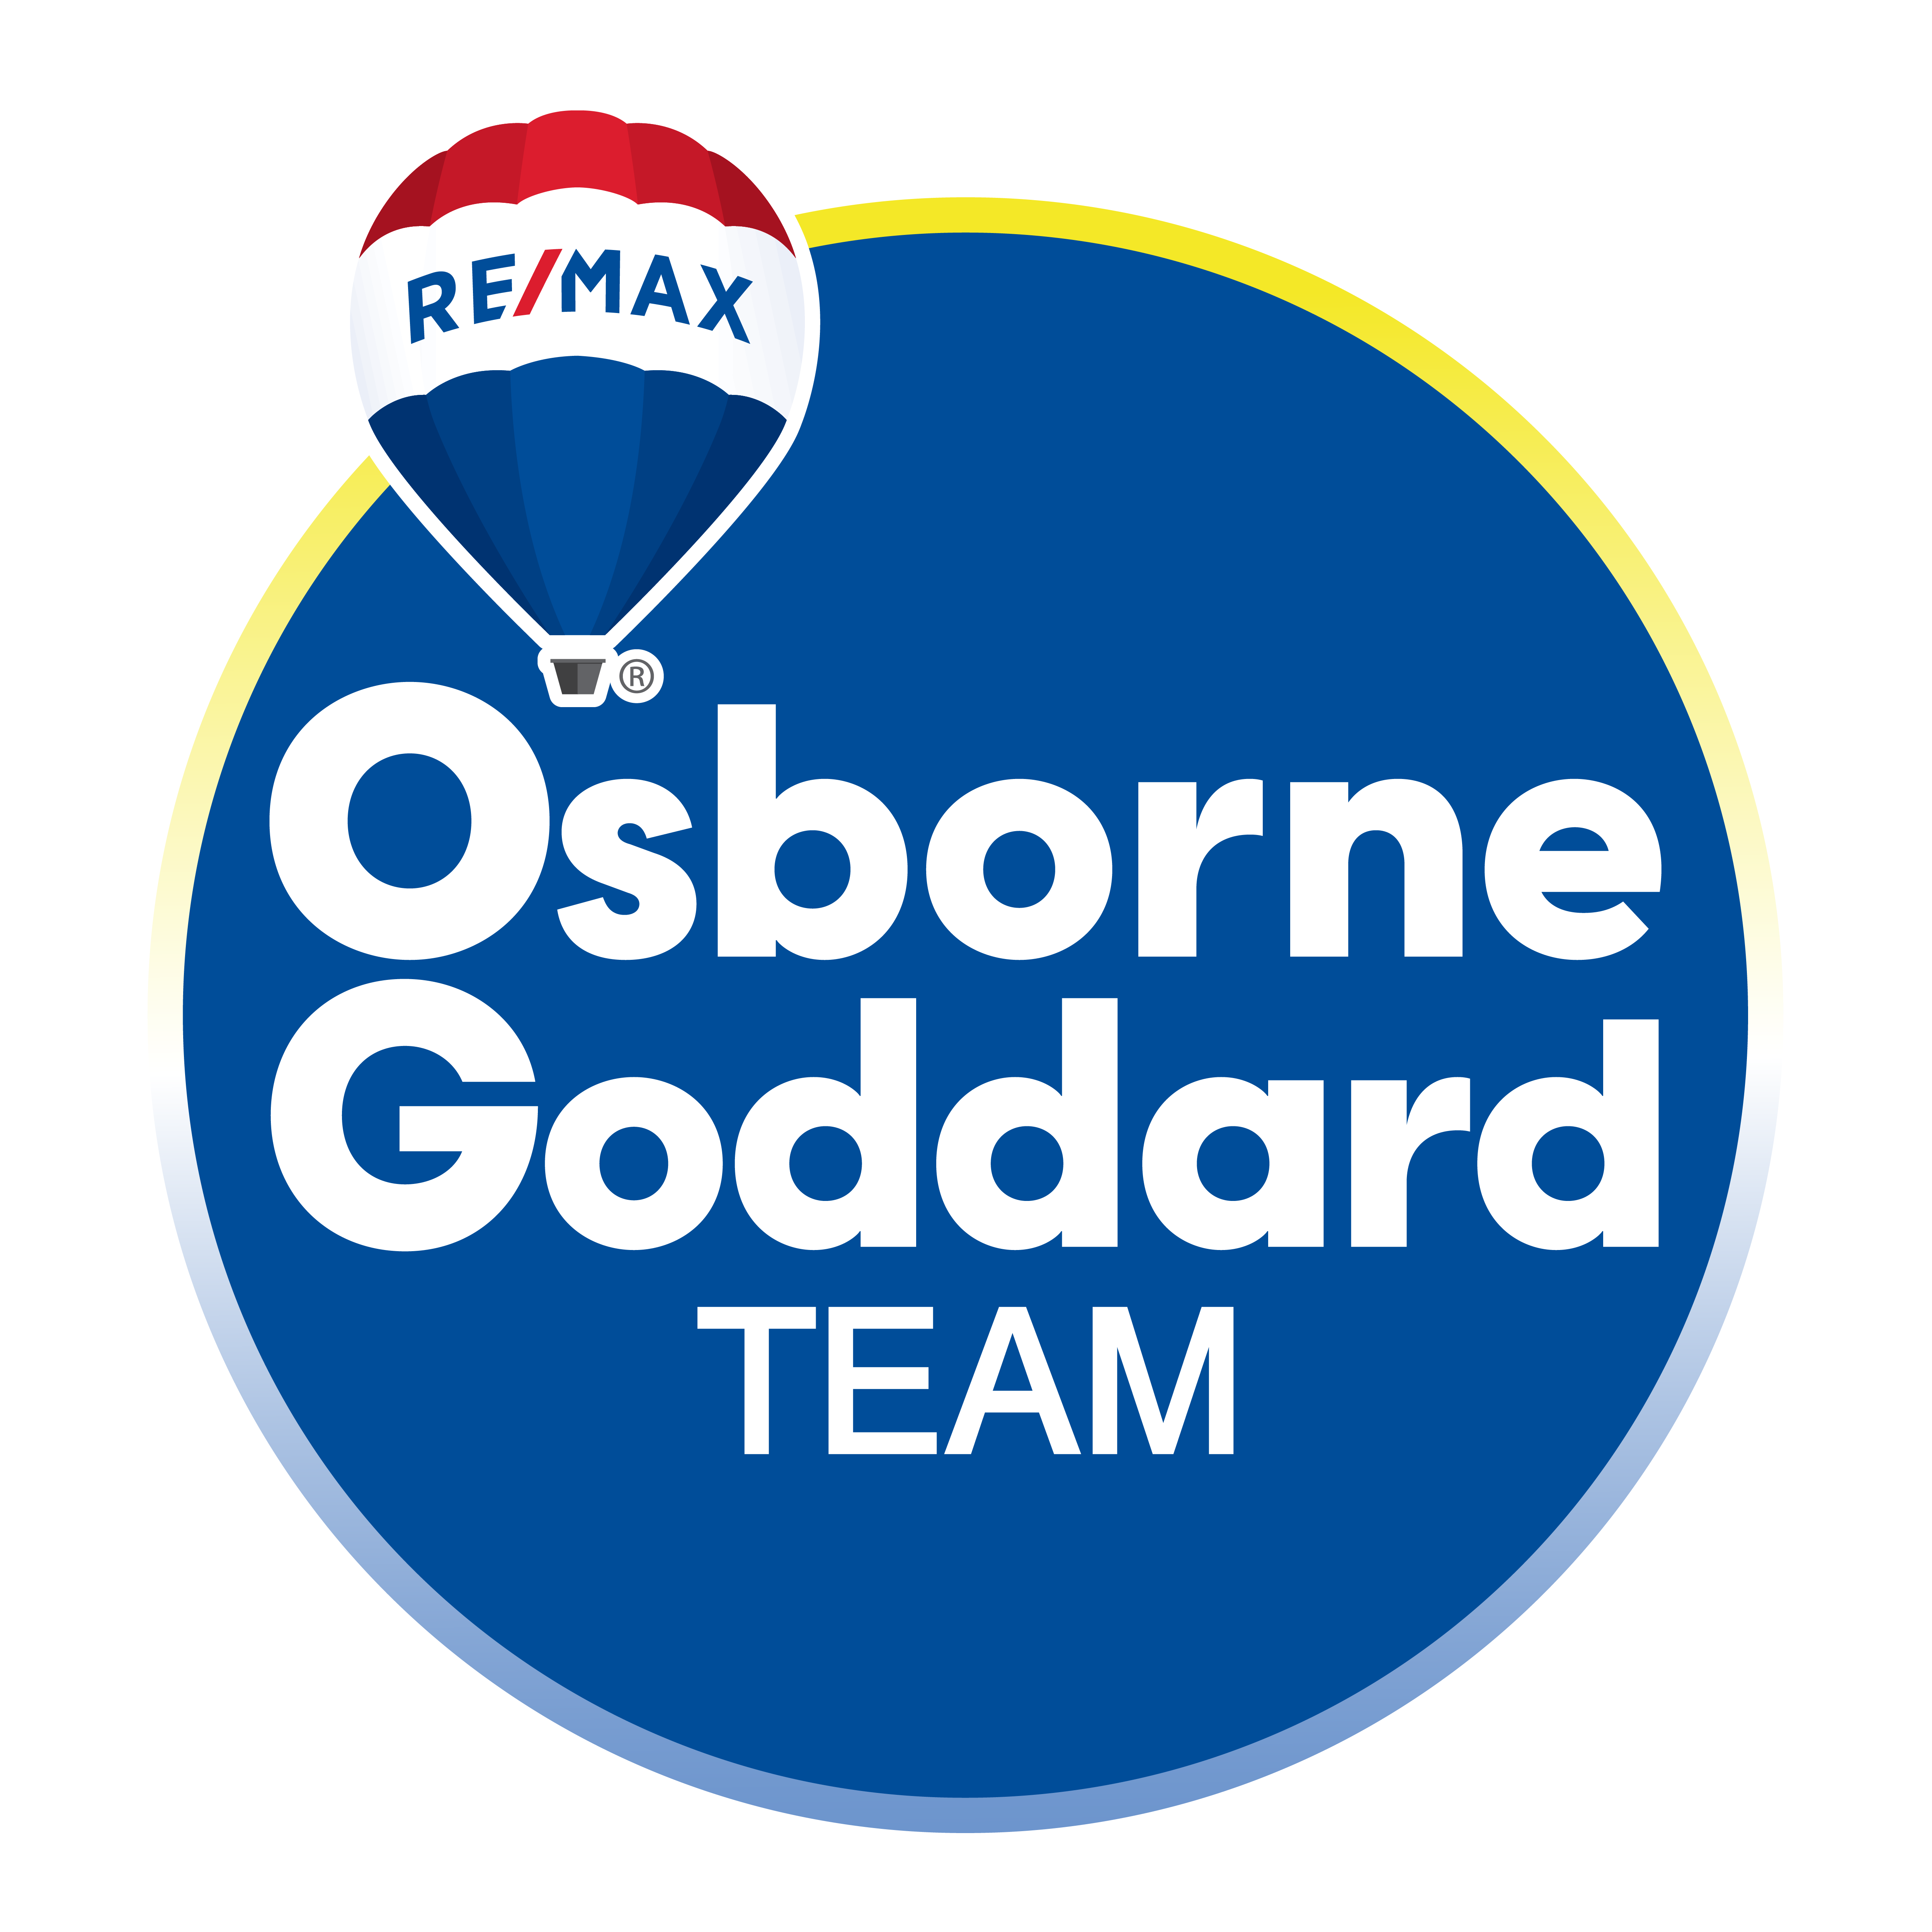 Osborne Goddard Team